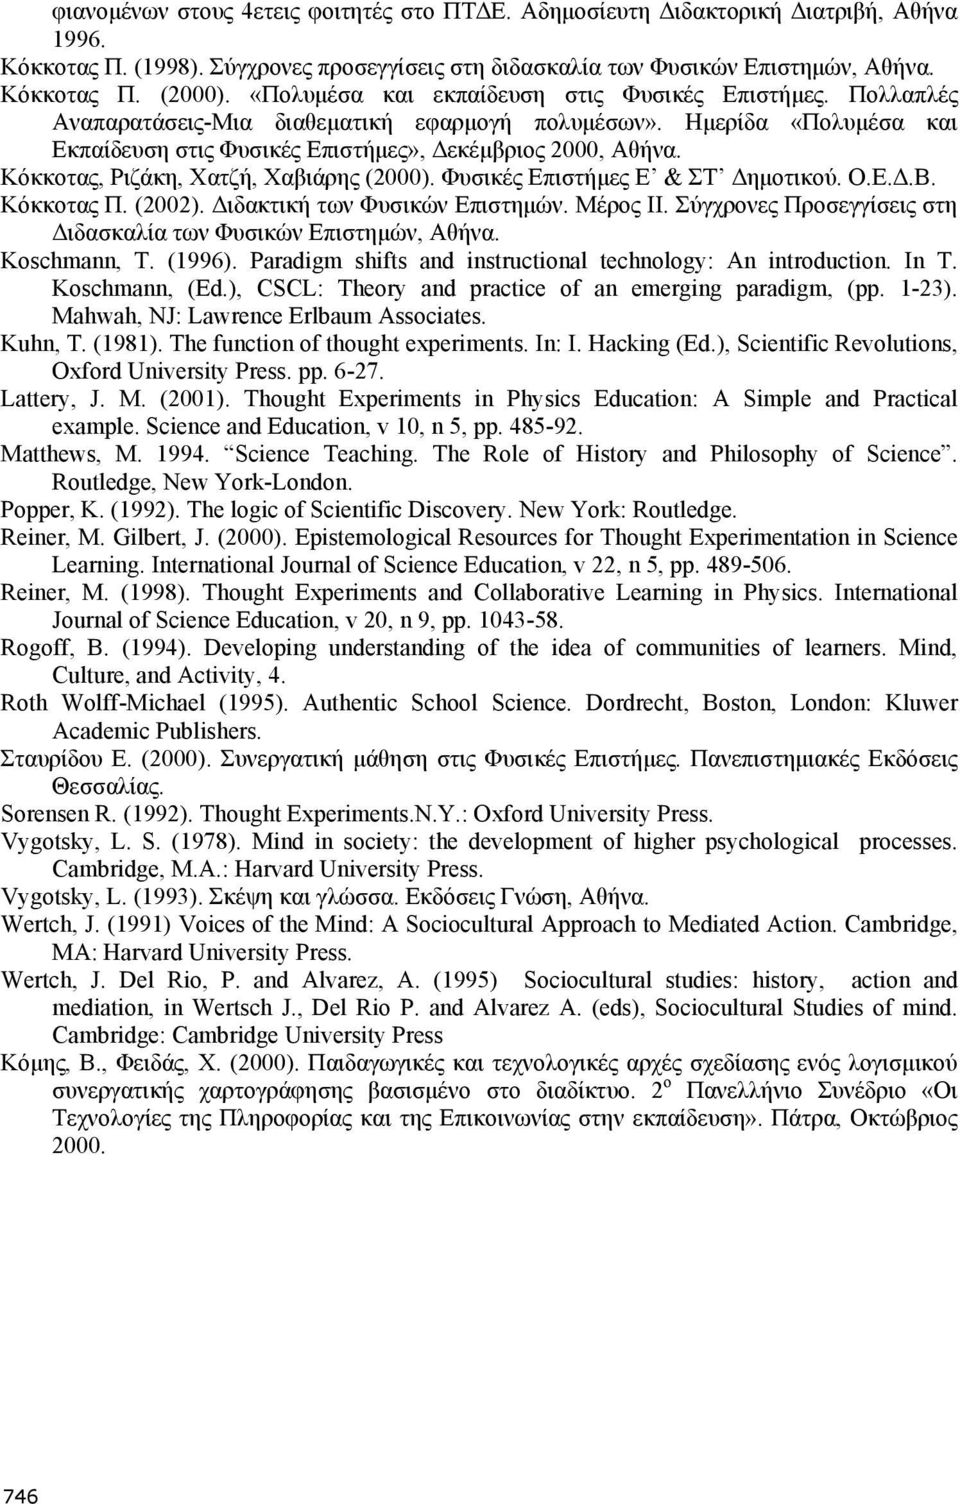 Κόκκοτας, Ριζάκη, Χατζή, Χαβιάρης (2000). Φυσικές Επιστήµες Ε & ΣΤ ηµοτικού. Ο.Ε..Β. Κόκκοτας Π. (2002). ιδακτική των Φυσικών Επιστηµών. Μέρος ΙΙ.